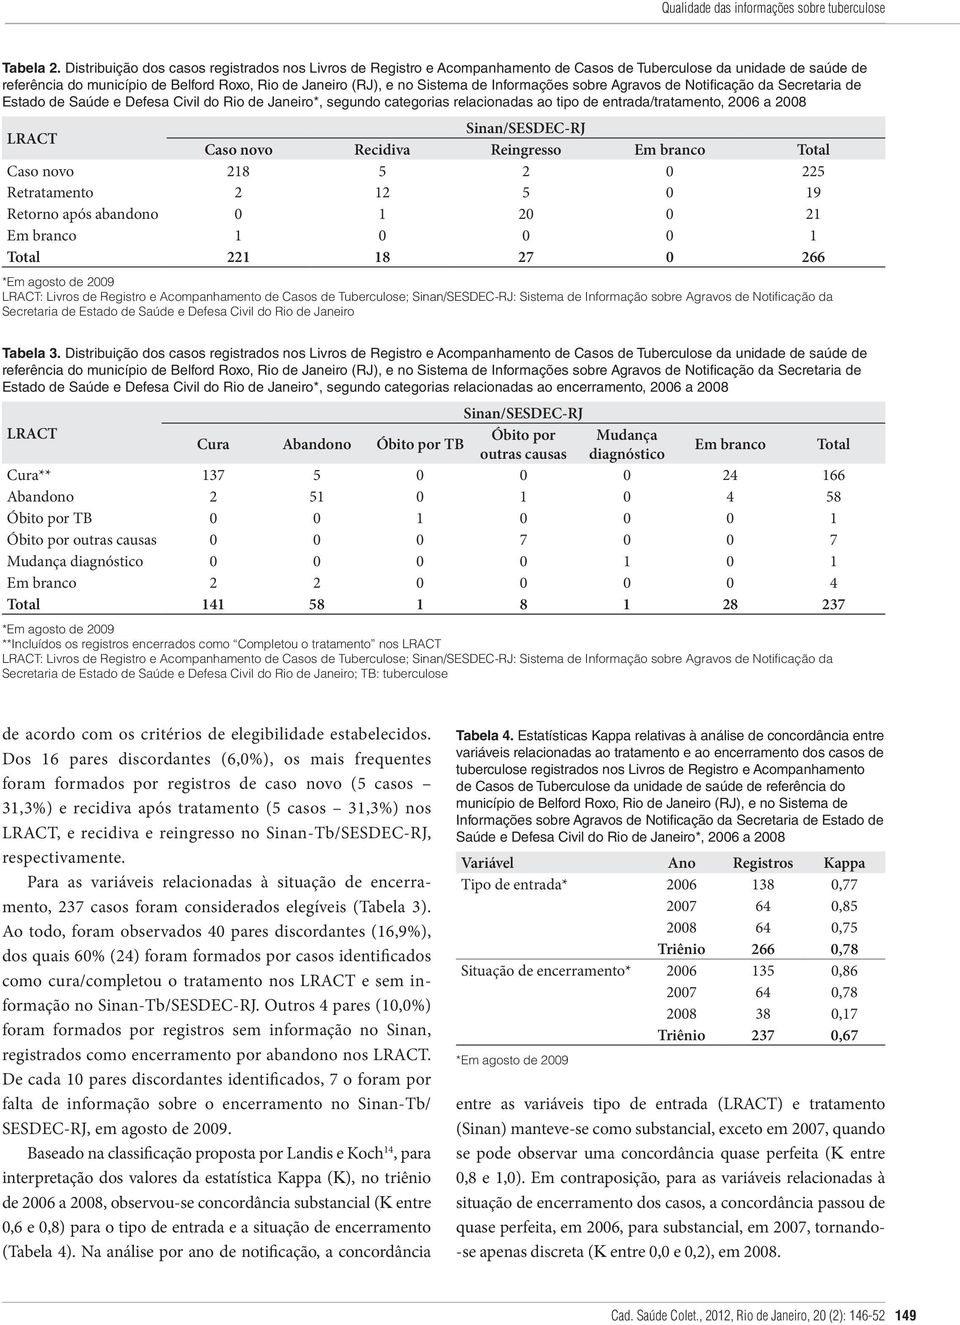 Informações sobre Agravos de Notificação da Secretaria de Estado de Saúde e Defesa Civil do Rio de Janeiro*, segundo categorias relacionadas ao tipo de entrada/tratamento, 2006 a 2008 LRACT